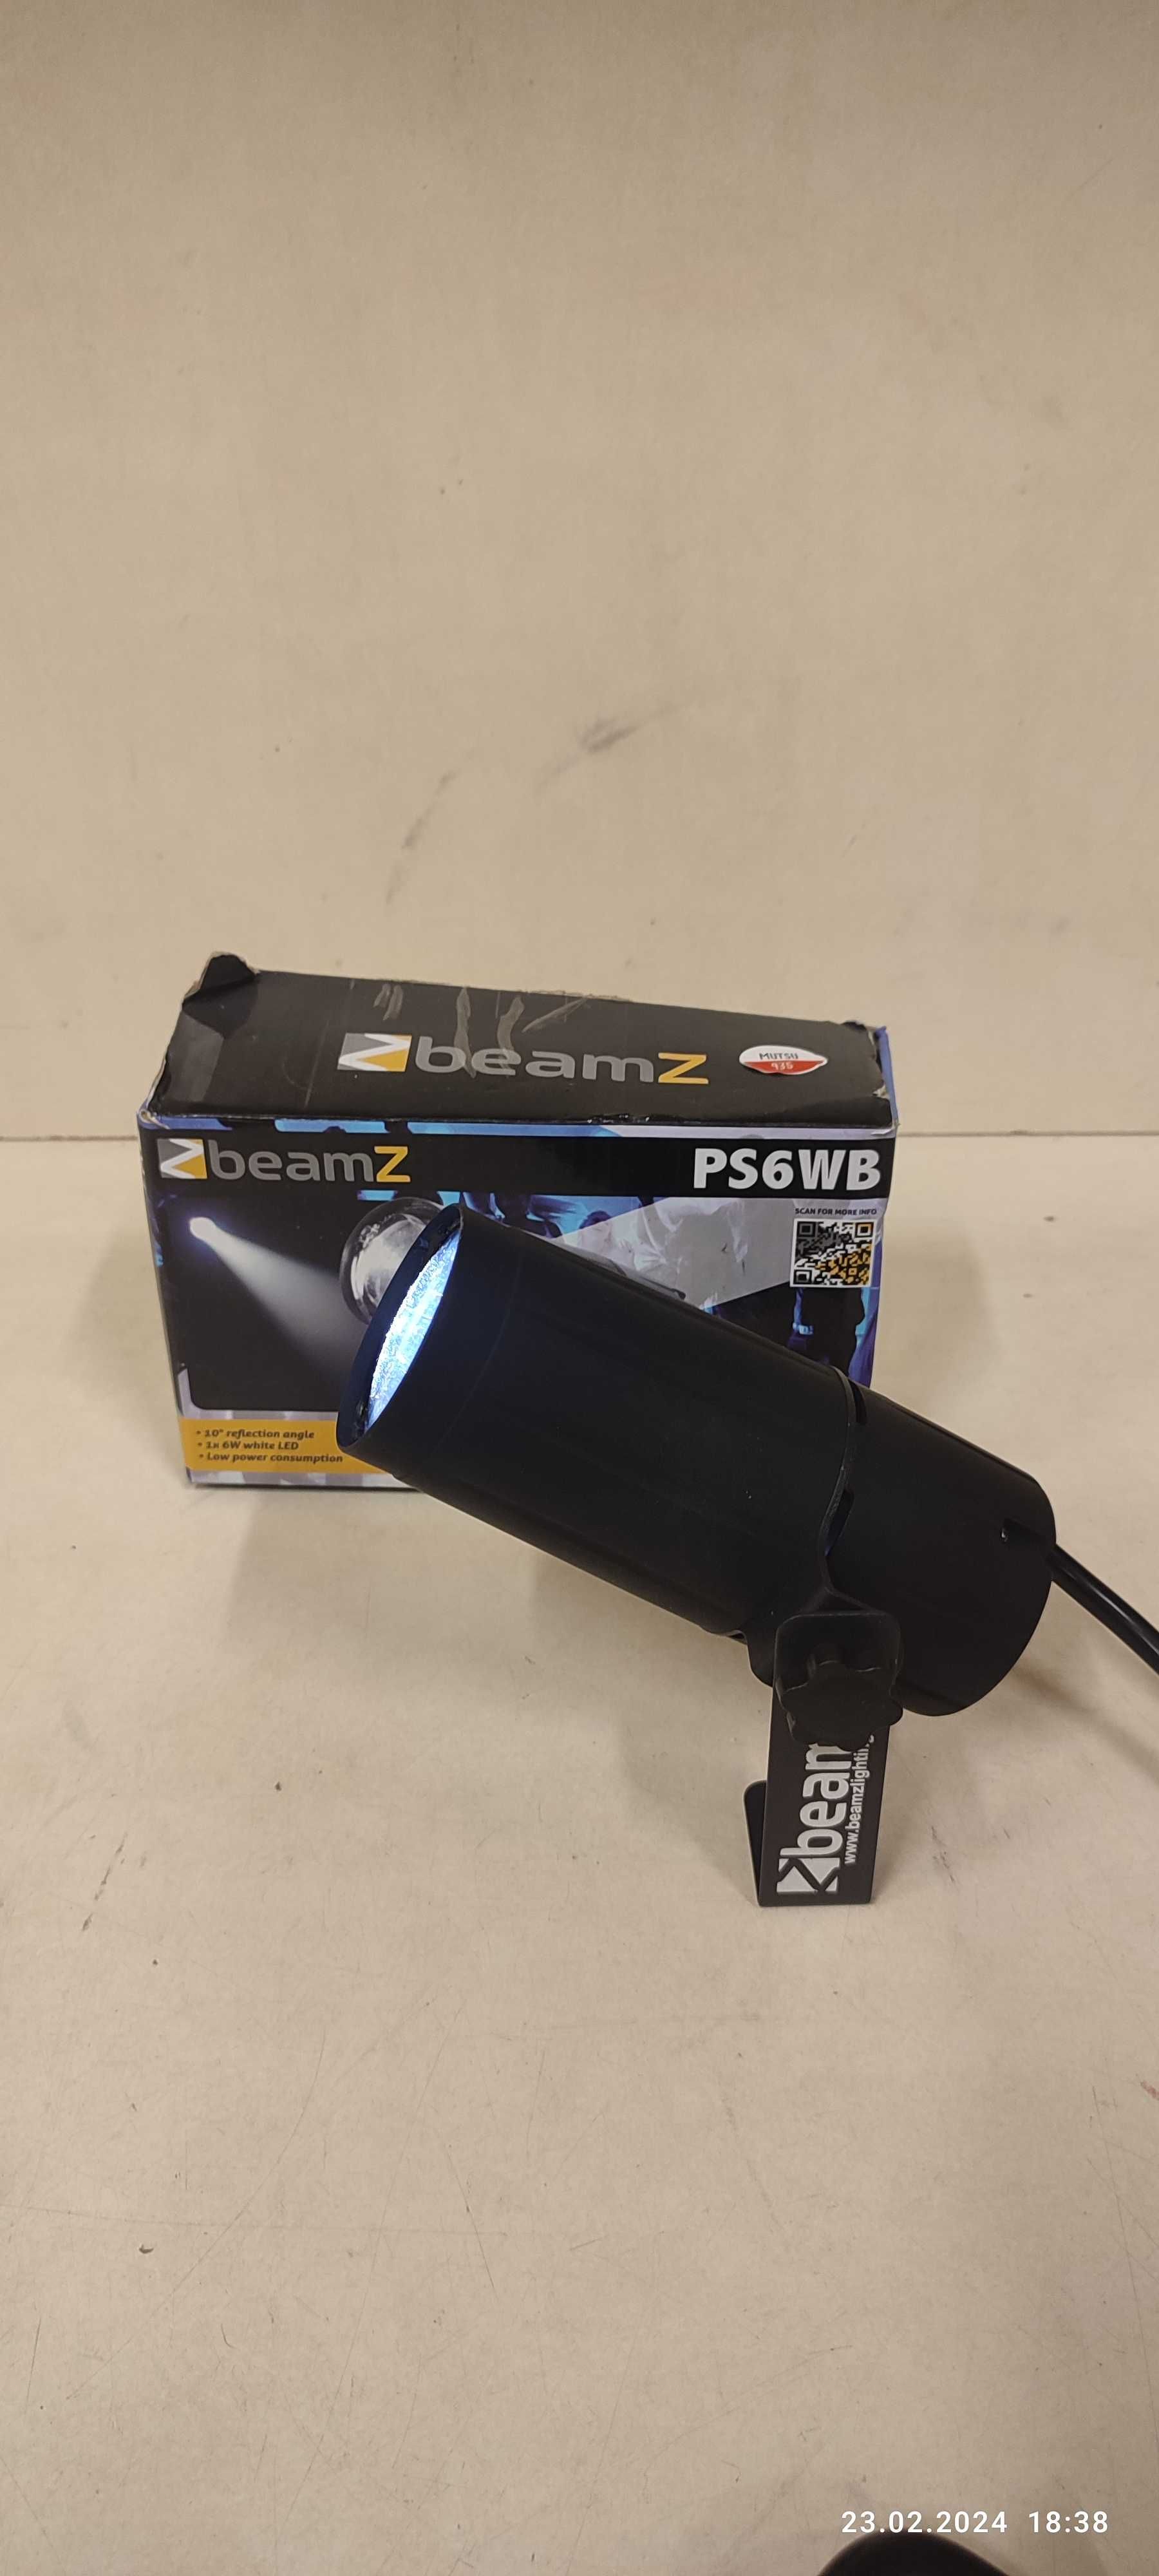 Reflektor Pinspot LED 6W PS6WB BeamZ